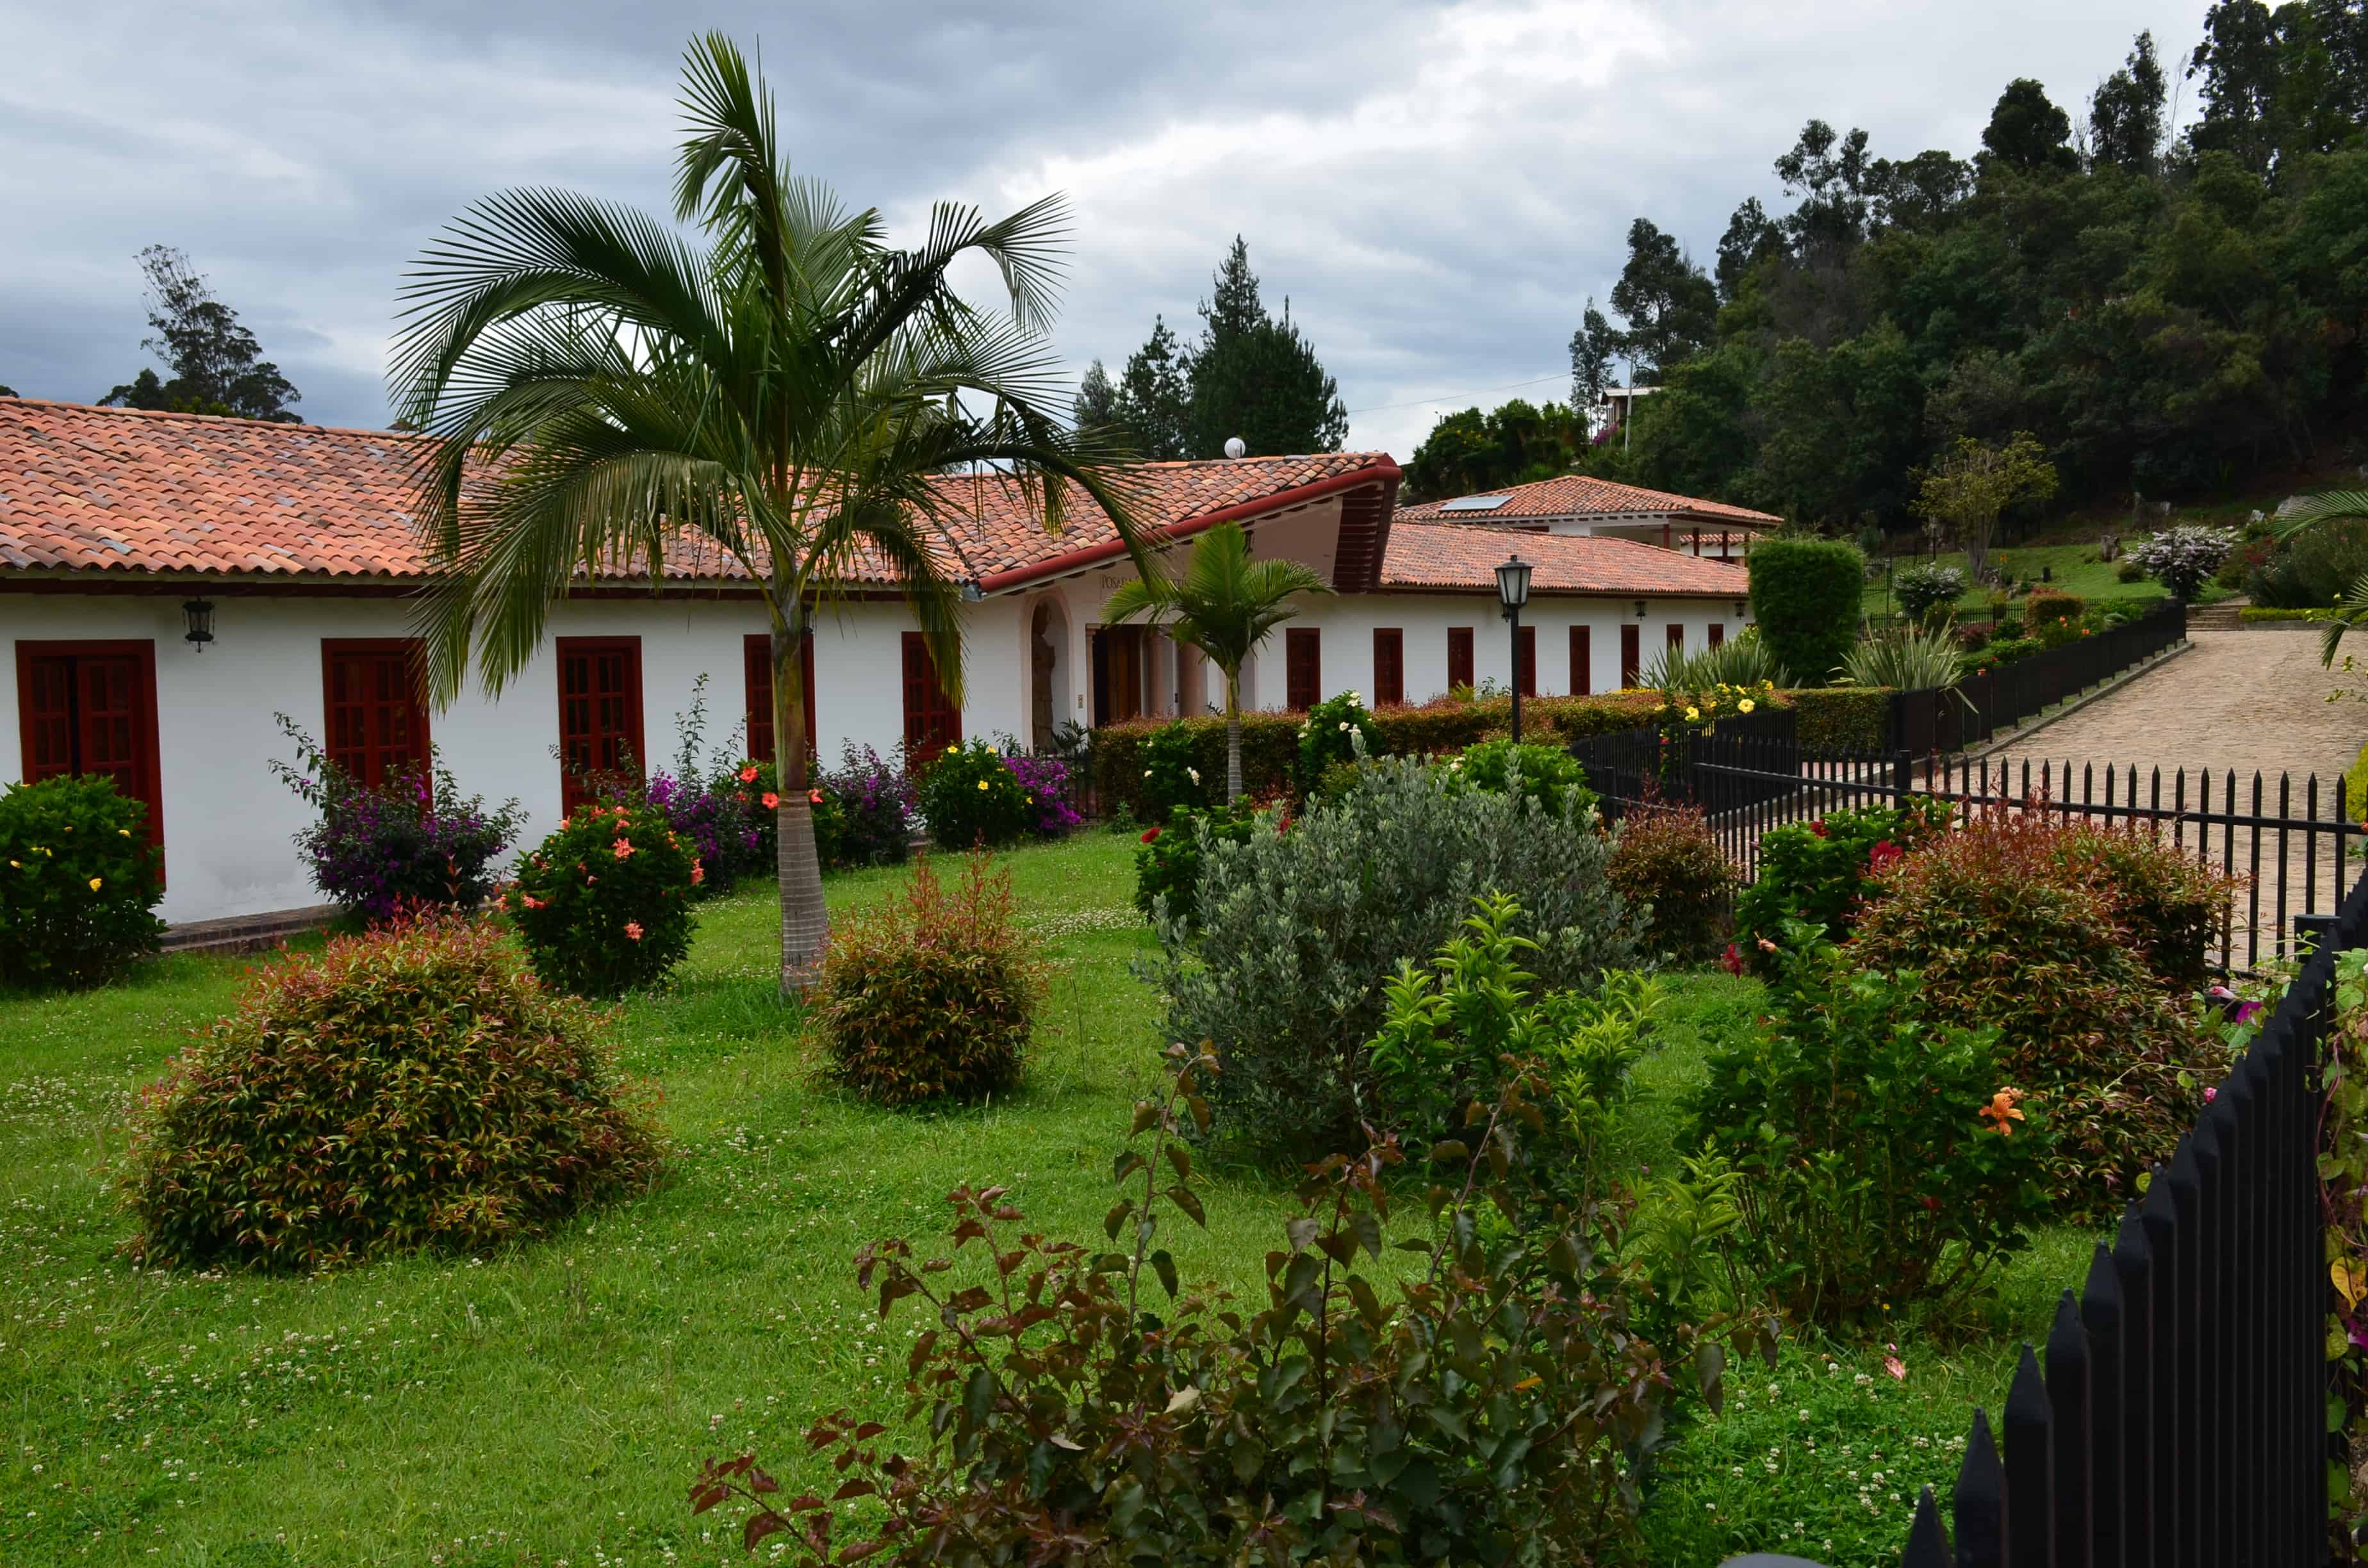 Posada San Agustín at La Candelaria Monastery, Boyacá, Colombia